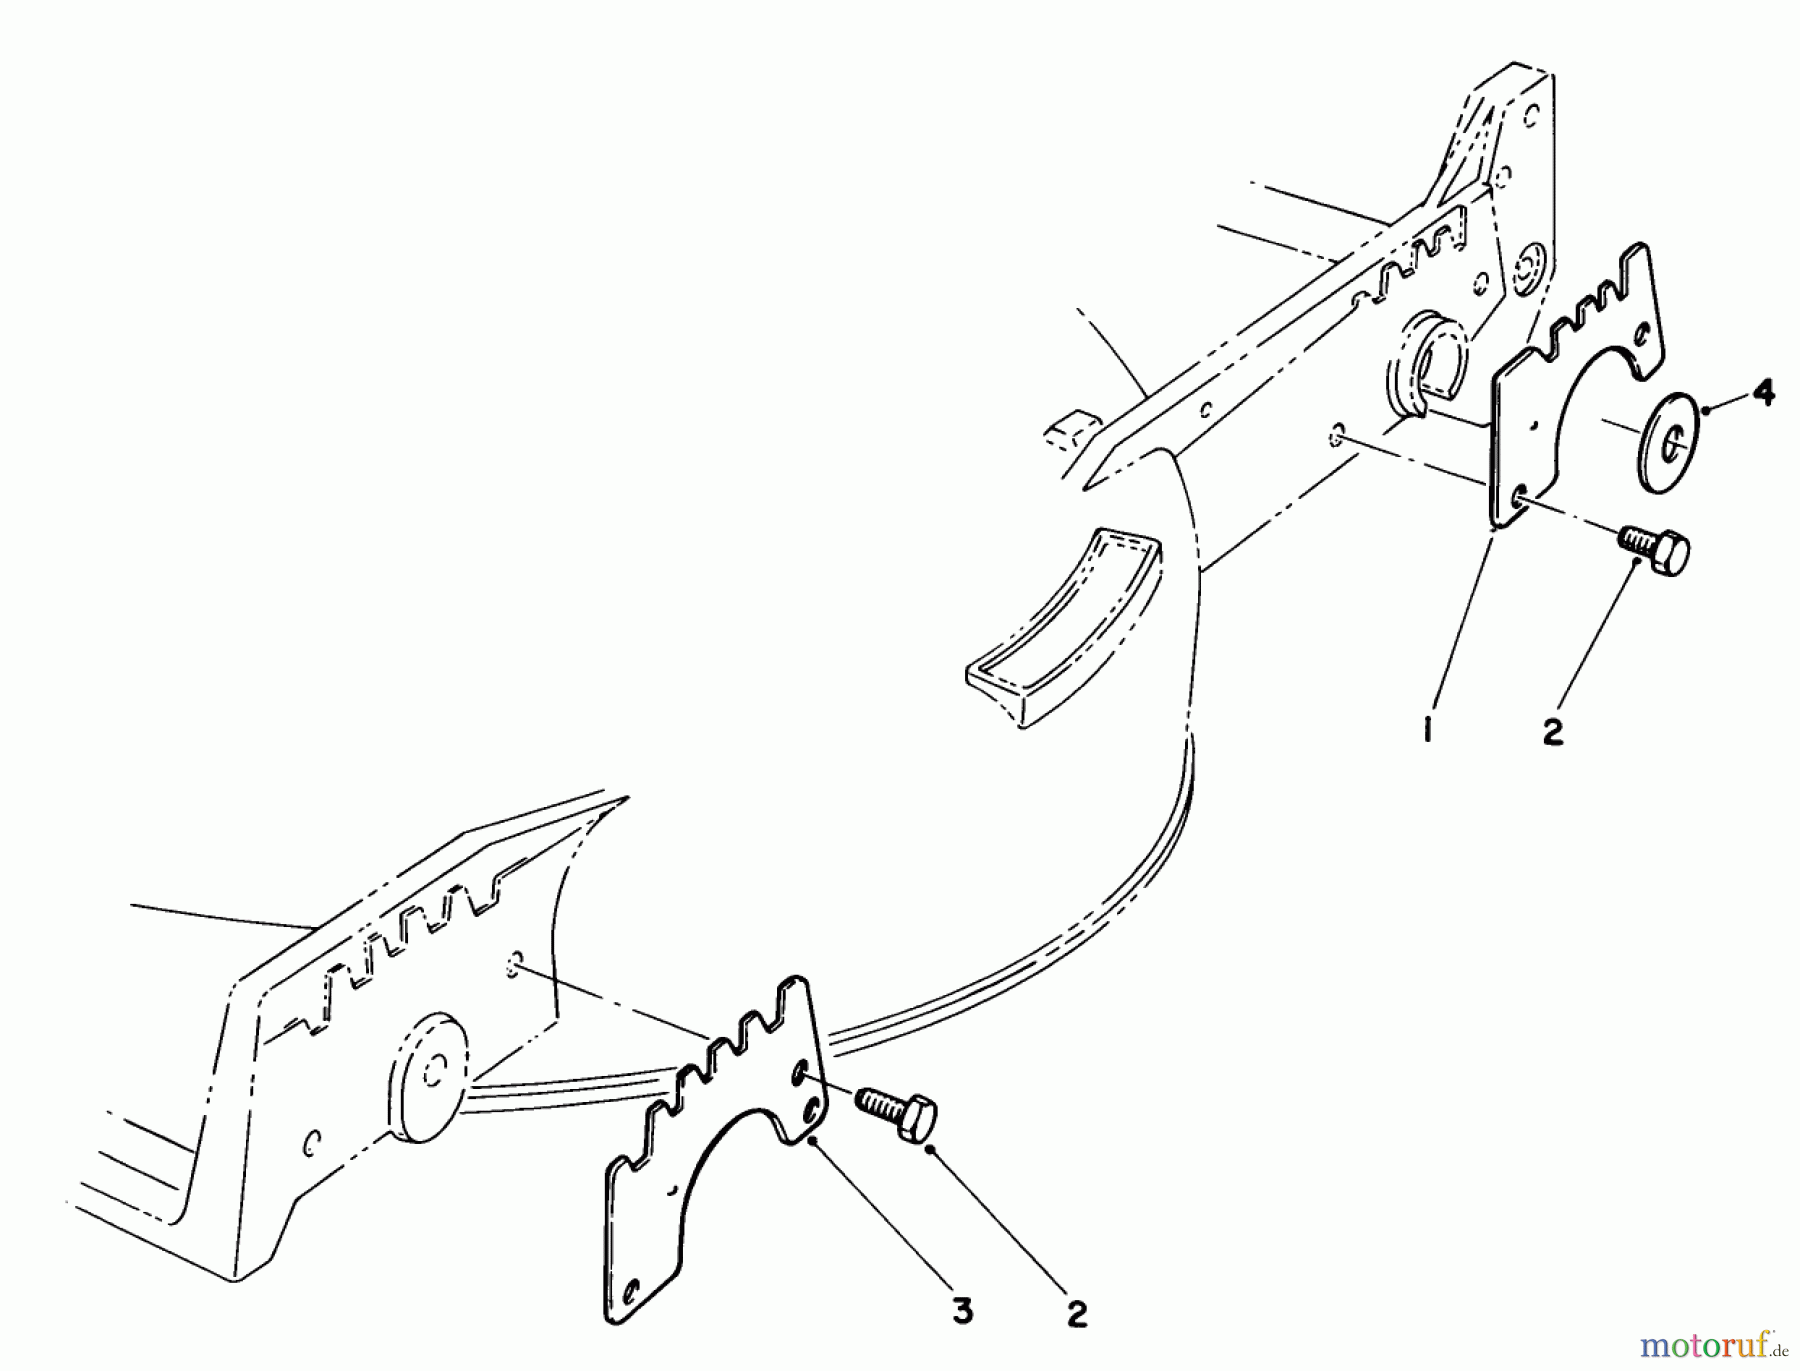  Toro Neu Mowers, Walk-Behind Seite 1 20782C - Toro Lawnmower, 1986 (6000001-6999999) WEAR PLATE KIT NO. 49-4080 (OPTIONAL)